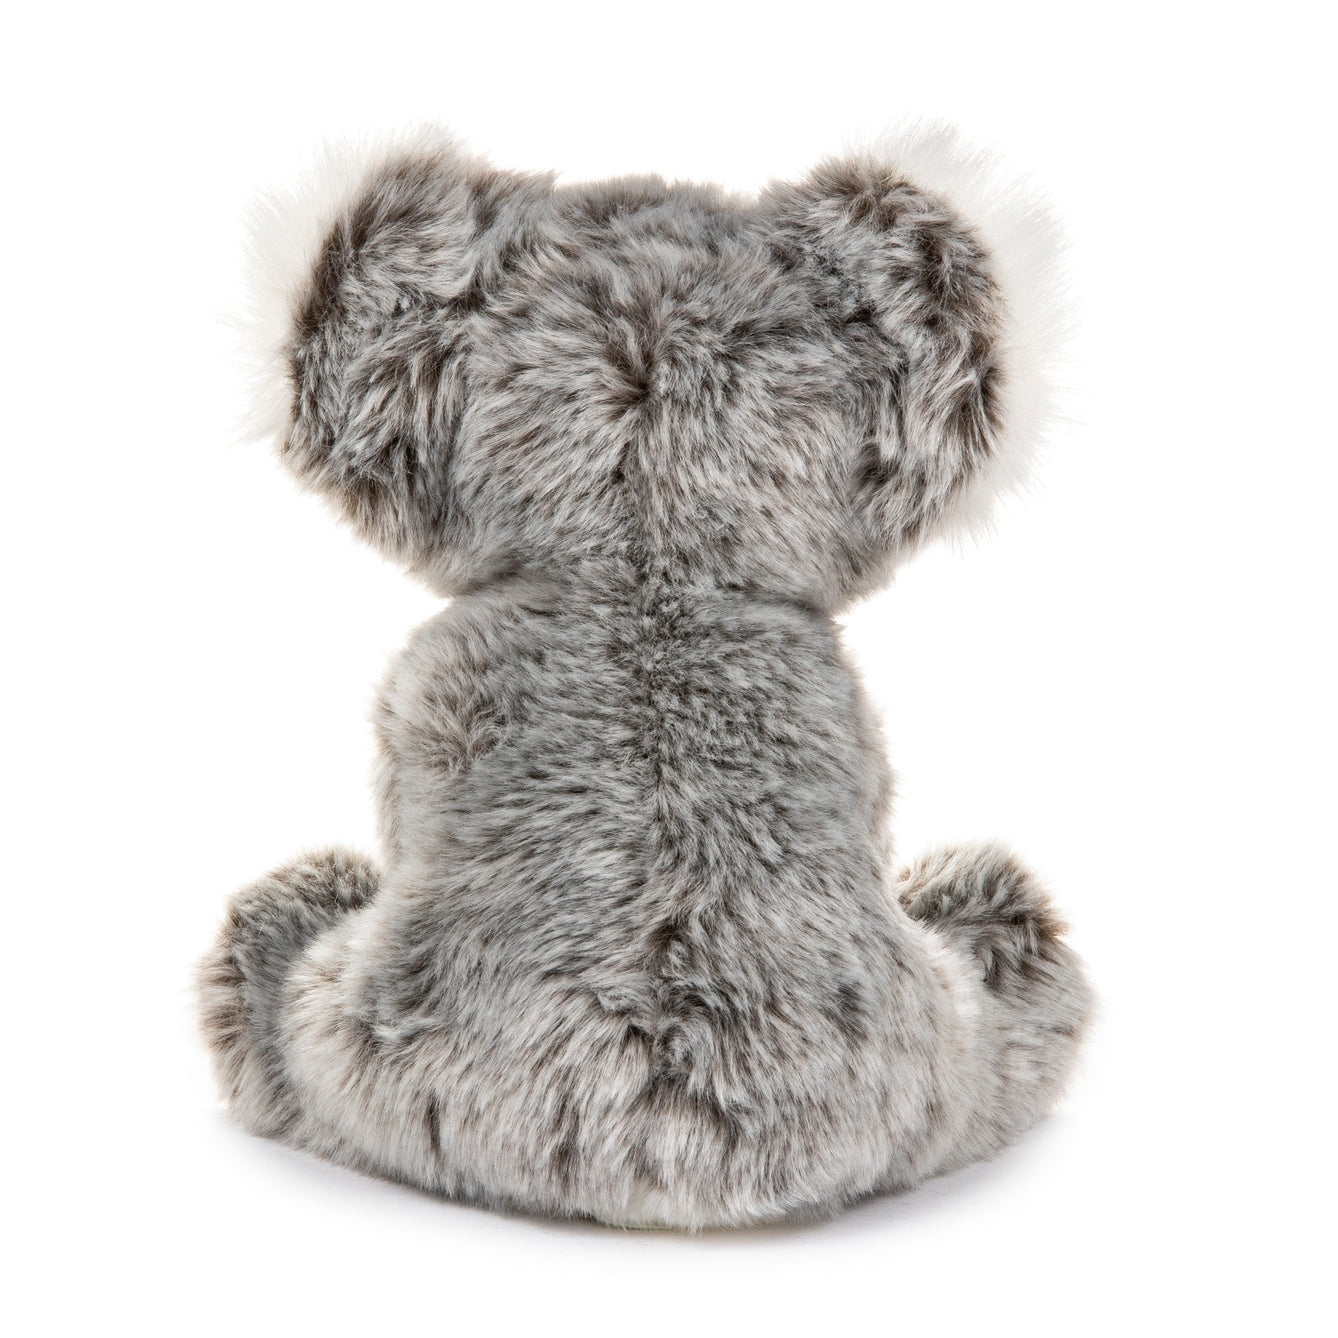 12" Stuffed Koala